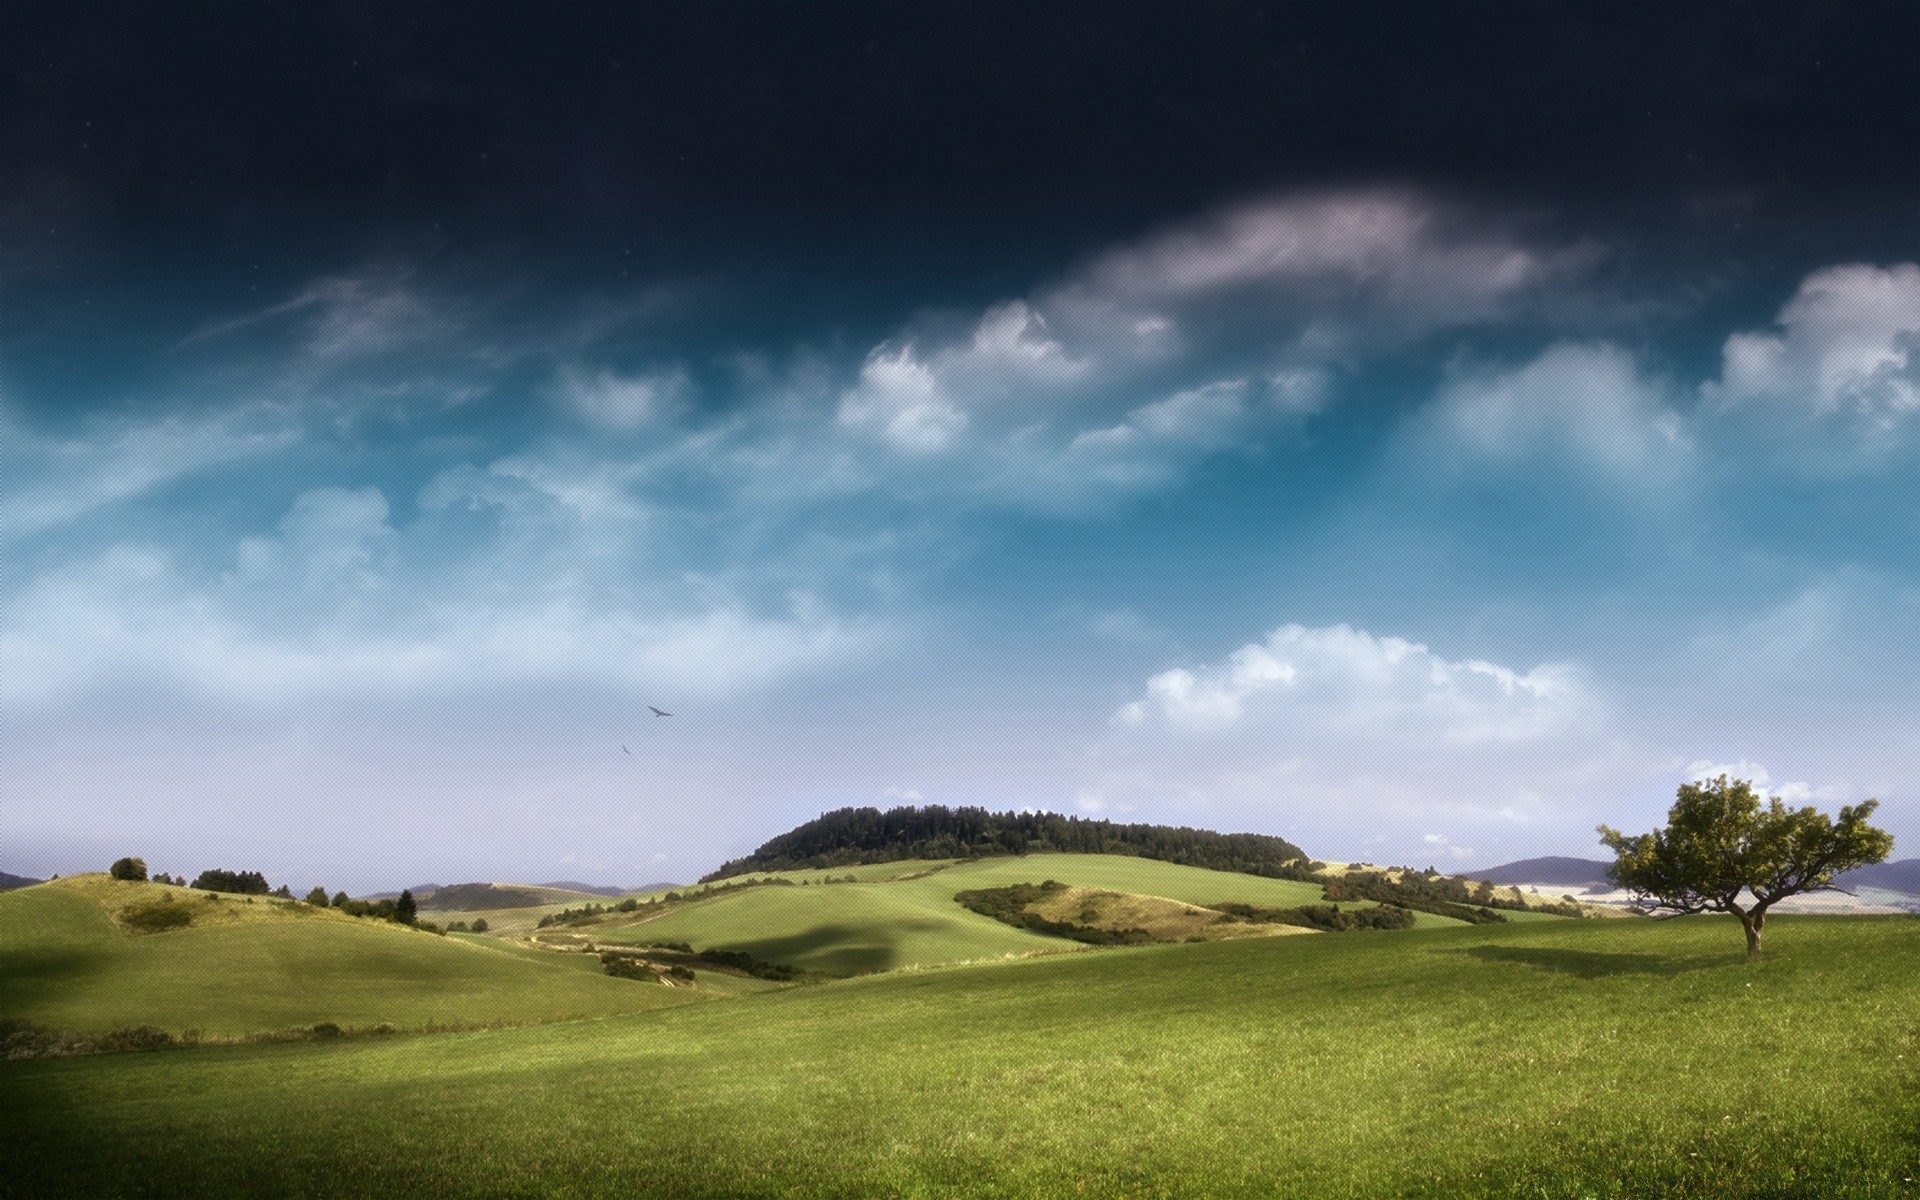 креатив пейзаж трава небо природа гольф сельской местности на открытом воздухе дерево сельское хозяйство лето сельских облако поле пастбище холм ферма путешествия